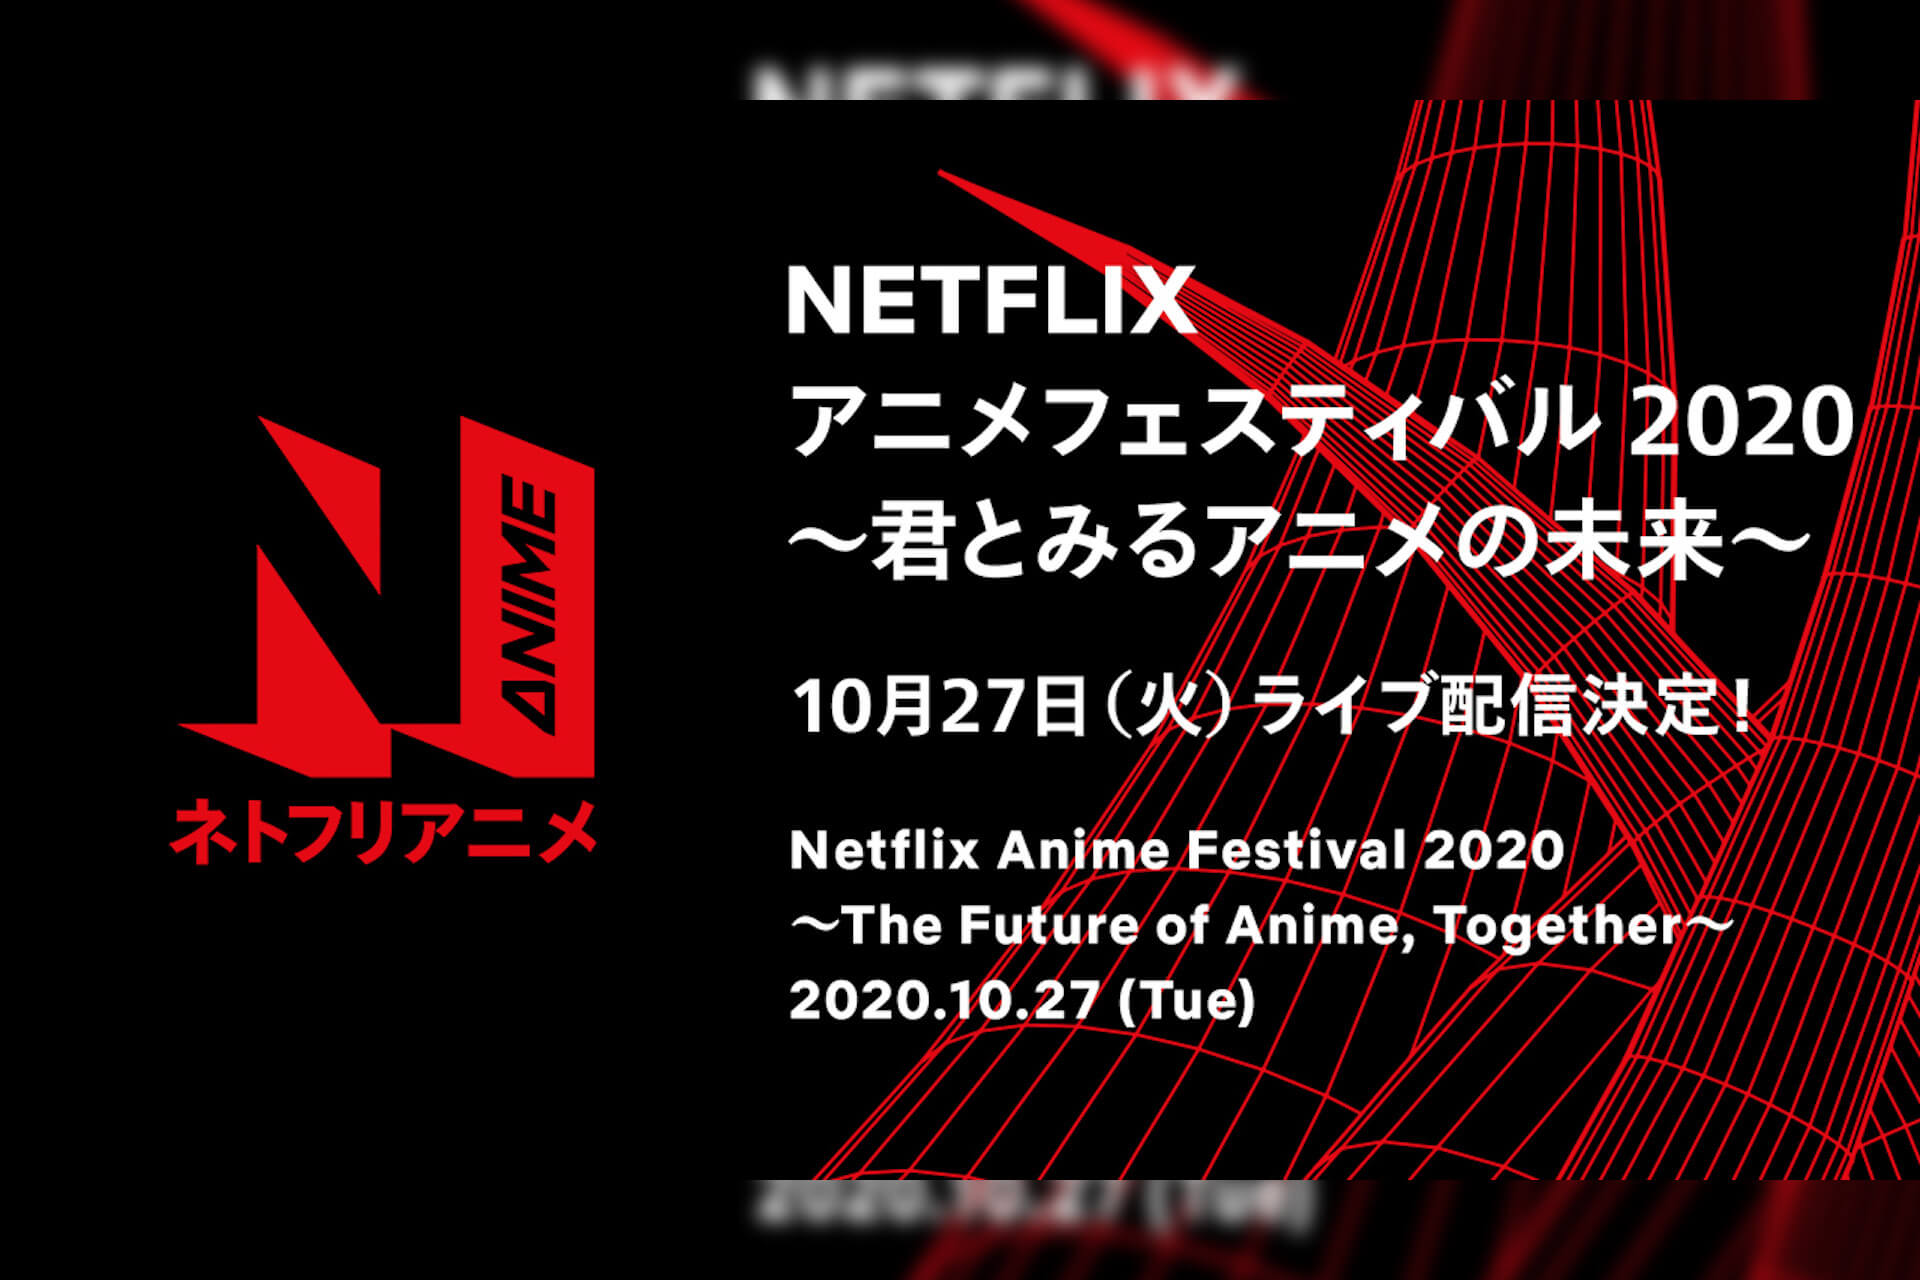 Netflixアニメ スプリガン エデン バイオハザード インフィニット ダークネス などの最新情報が明らかに Netflix アニメフェスティバル が開催決定 Qetic